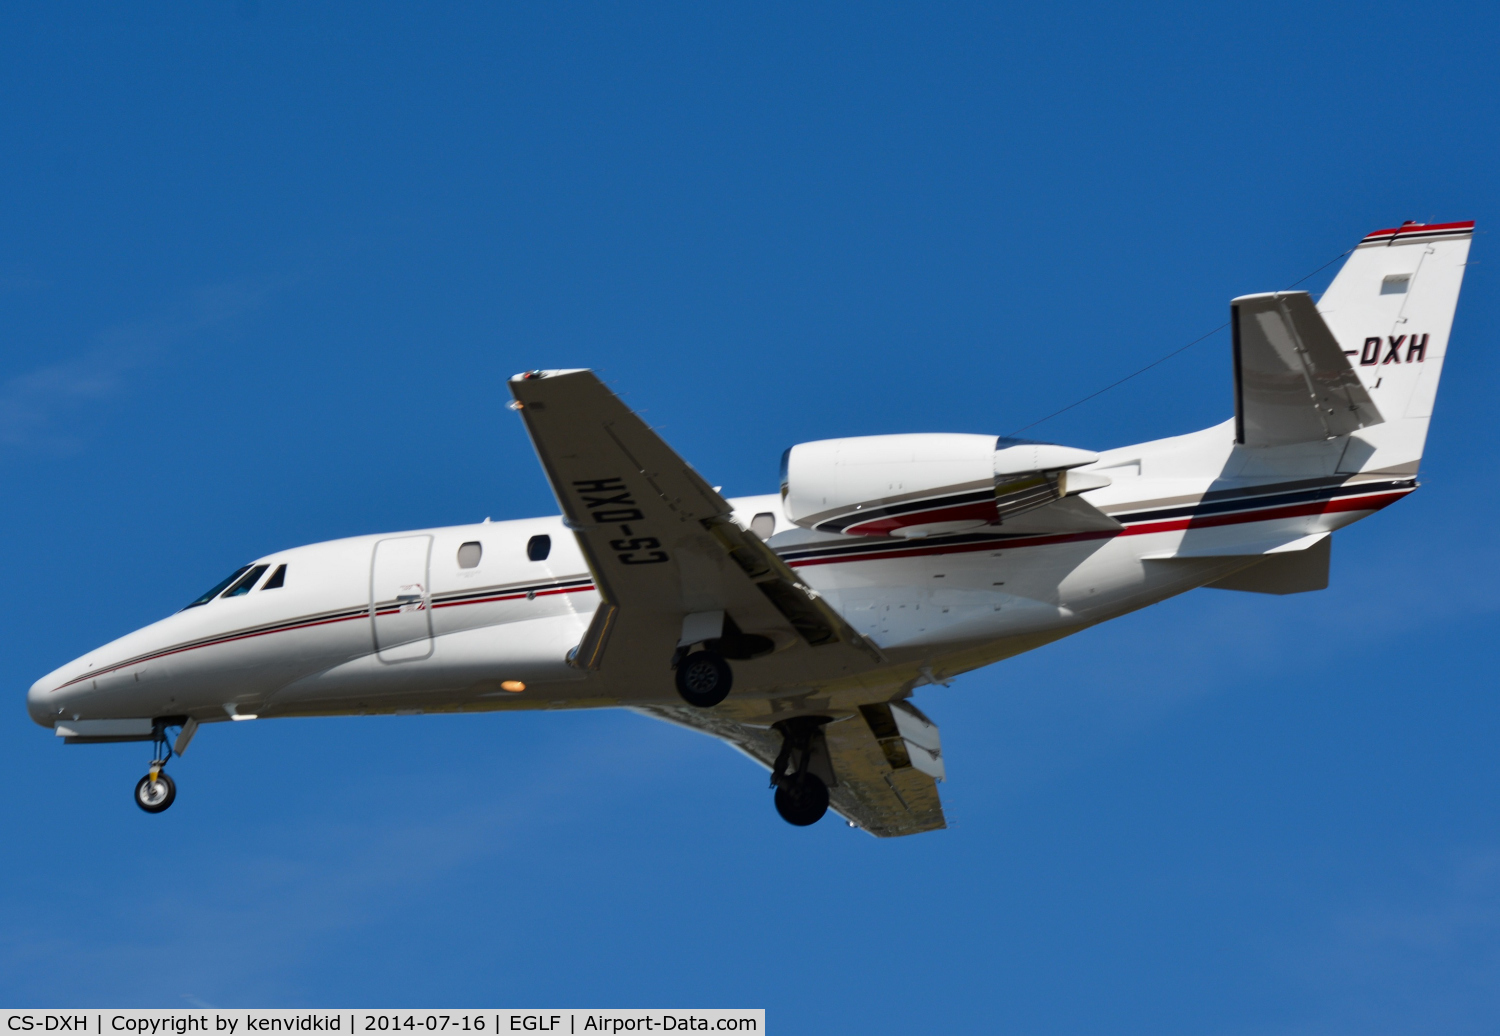 CS-DXH, 2006 Cessna Citation XLS C/N 560-5615, Netjets arrival.